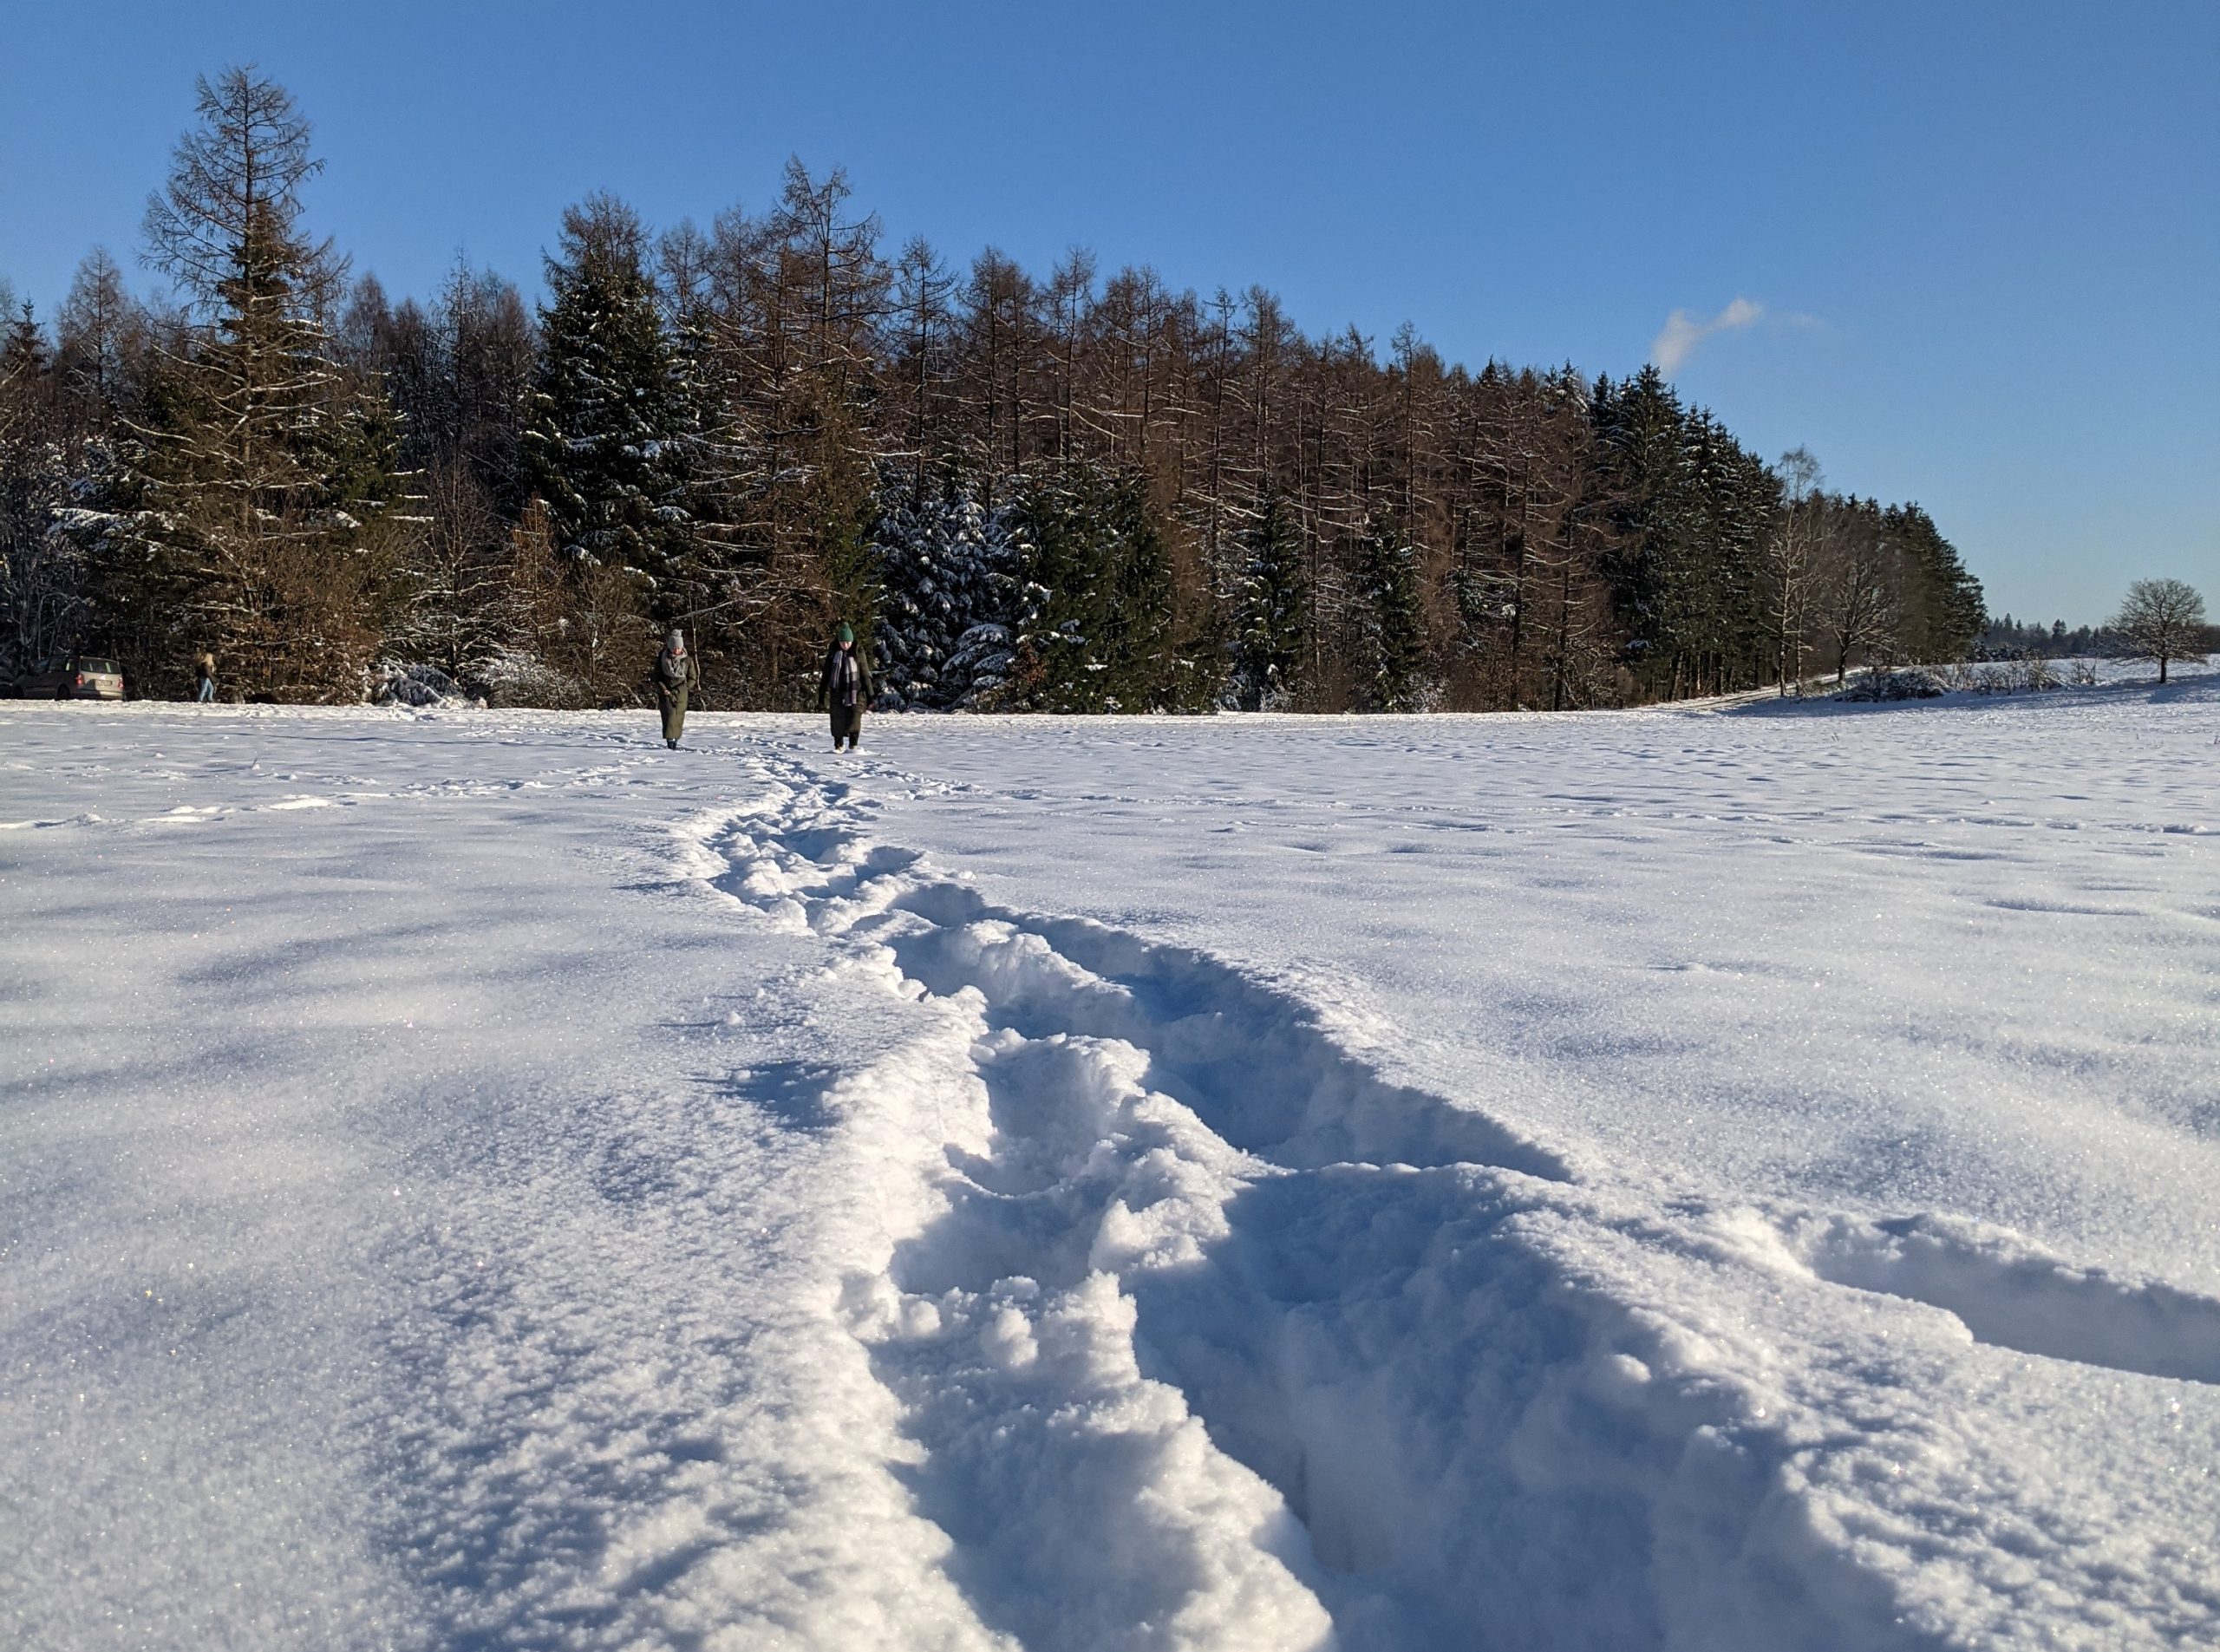 Winterwanderung im Naturpark Hunsrück-Hochwald bei Nonnweiler/Saarland. Foto: Saarbrücker Kompass